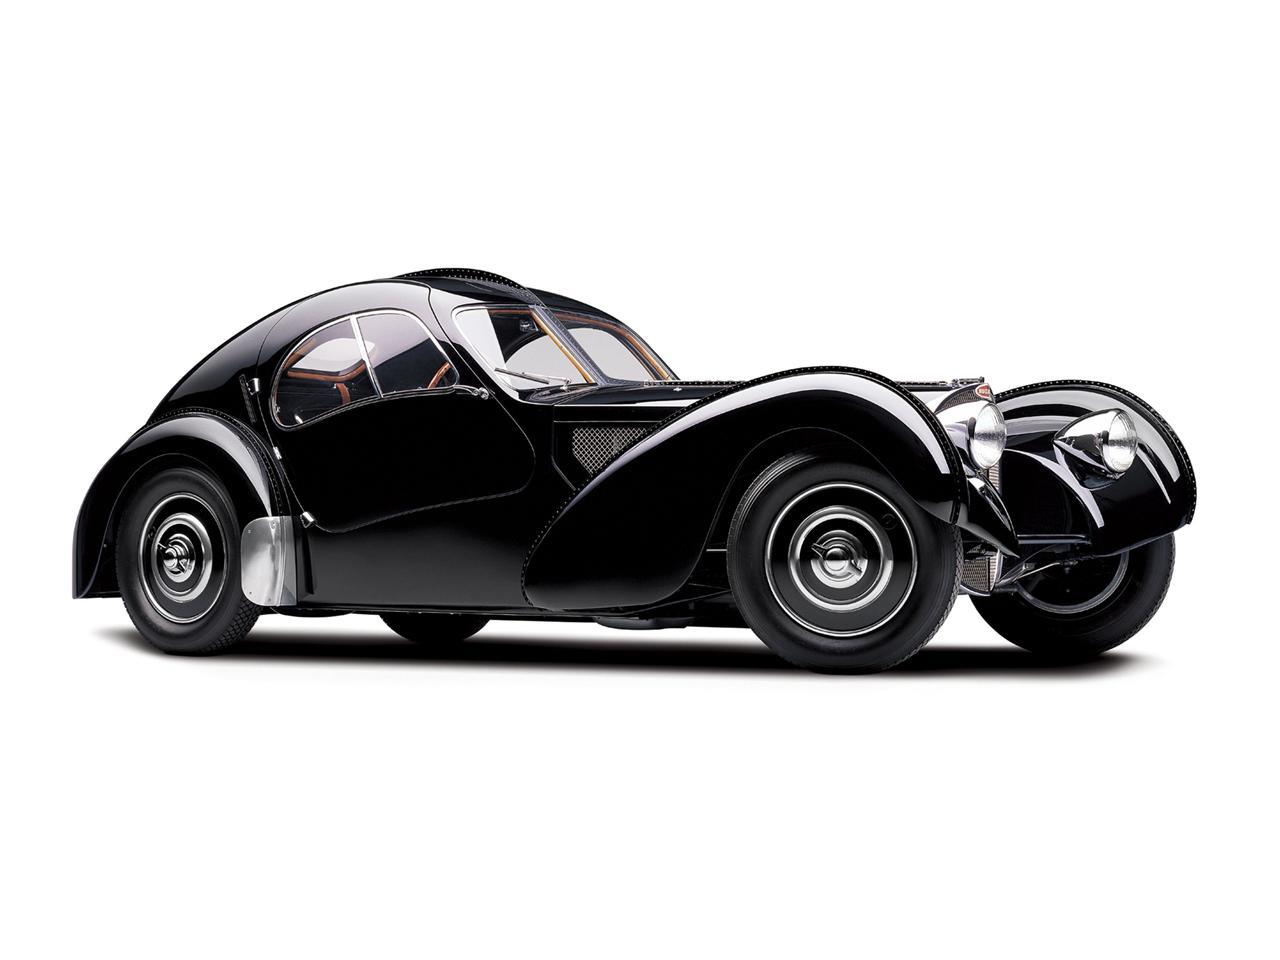 Así era el Bugatti Type 57SC Atlantic, hermosísimo cupé deportivo desarrollado en los años treinta por Jean Bugatti.